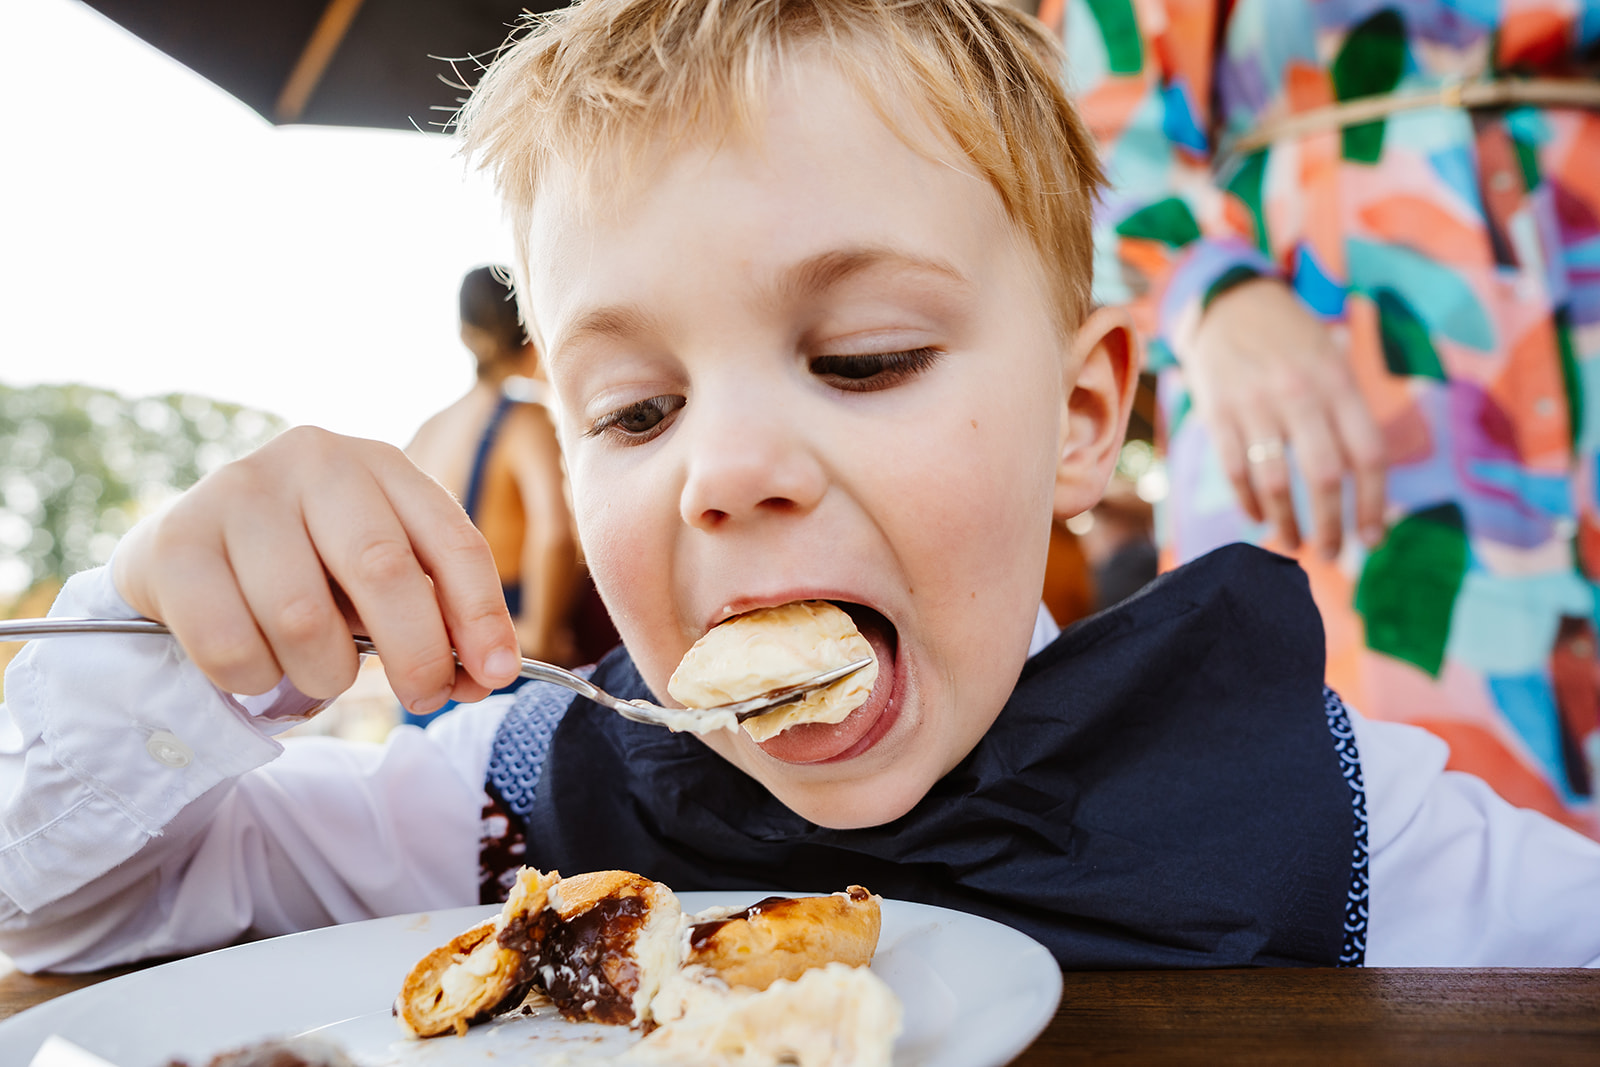 Trouwen bij Tapijn Maastricht - Grappige foto van kind dat taart eet